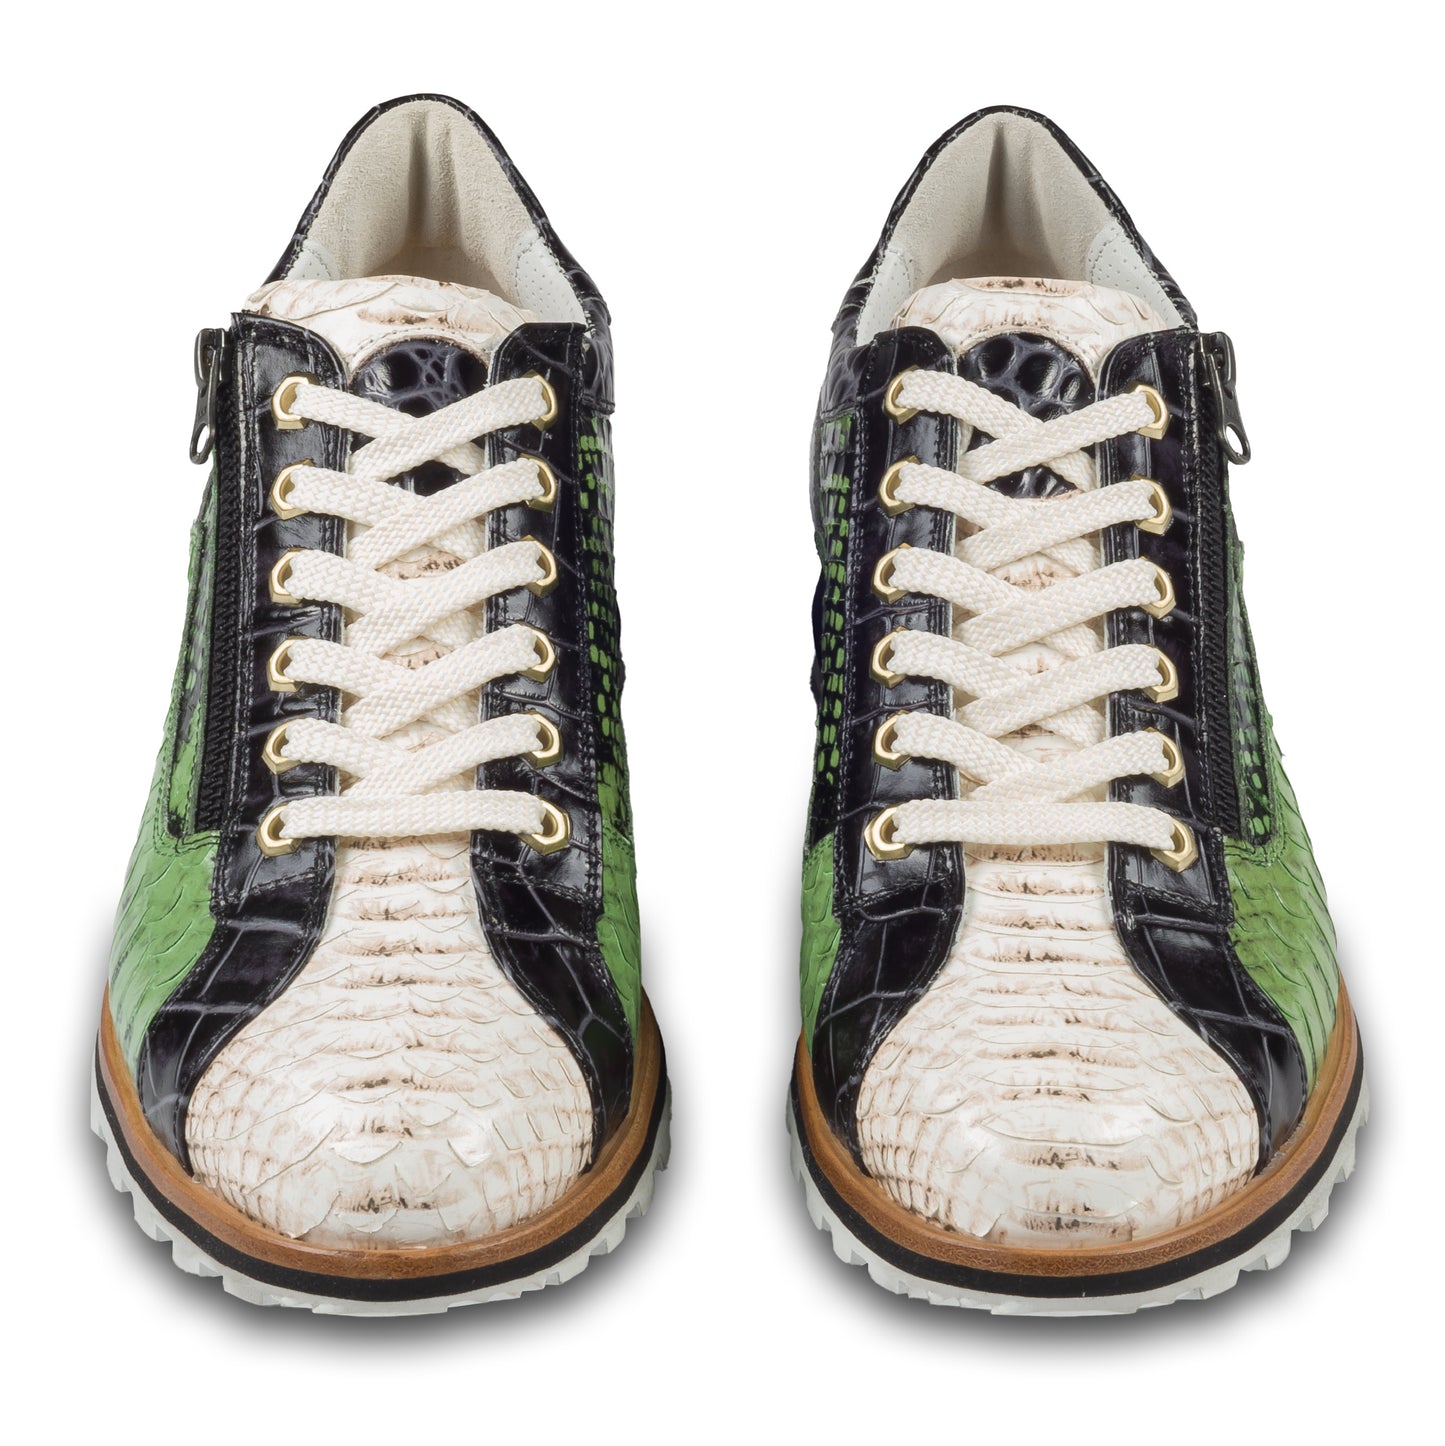 Lorenzi Herren Leder Sneaker in grün / creme / schwarzer Schlangen-Optik und seitlichem Reißverschluß. Handgefertigt in Italien. Paarweise Ansicht von vorne. 